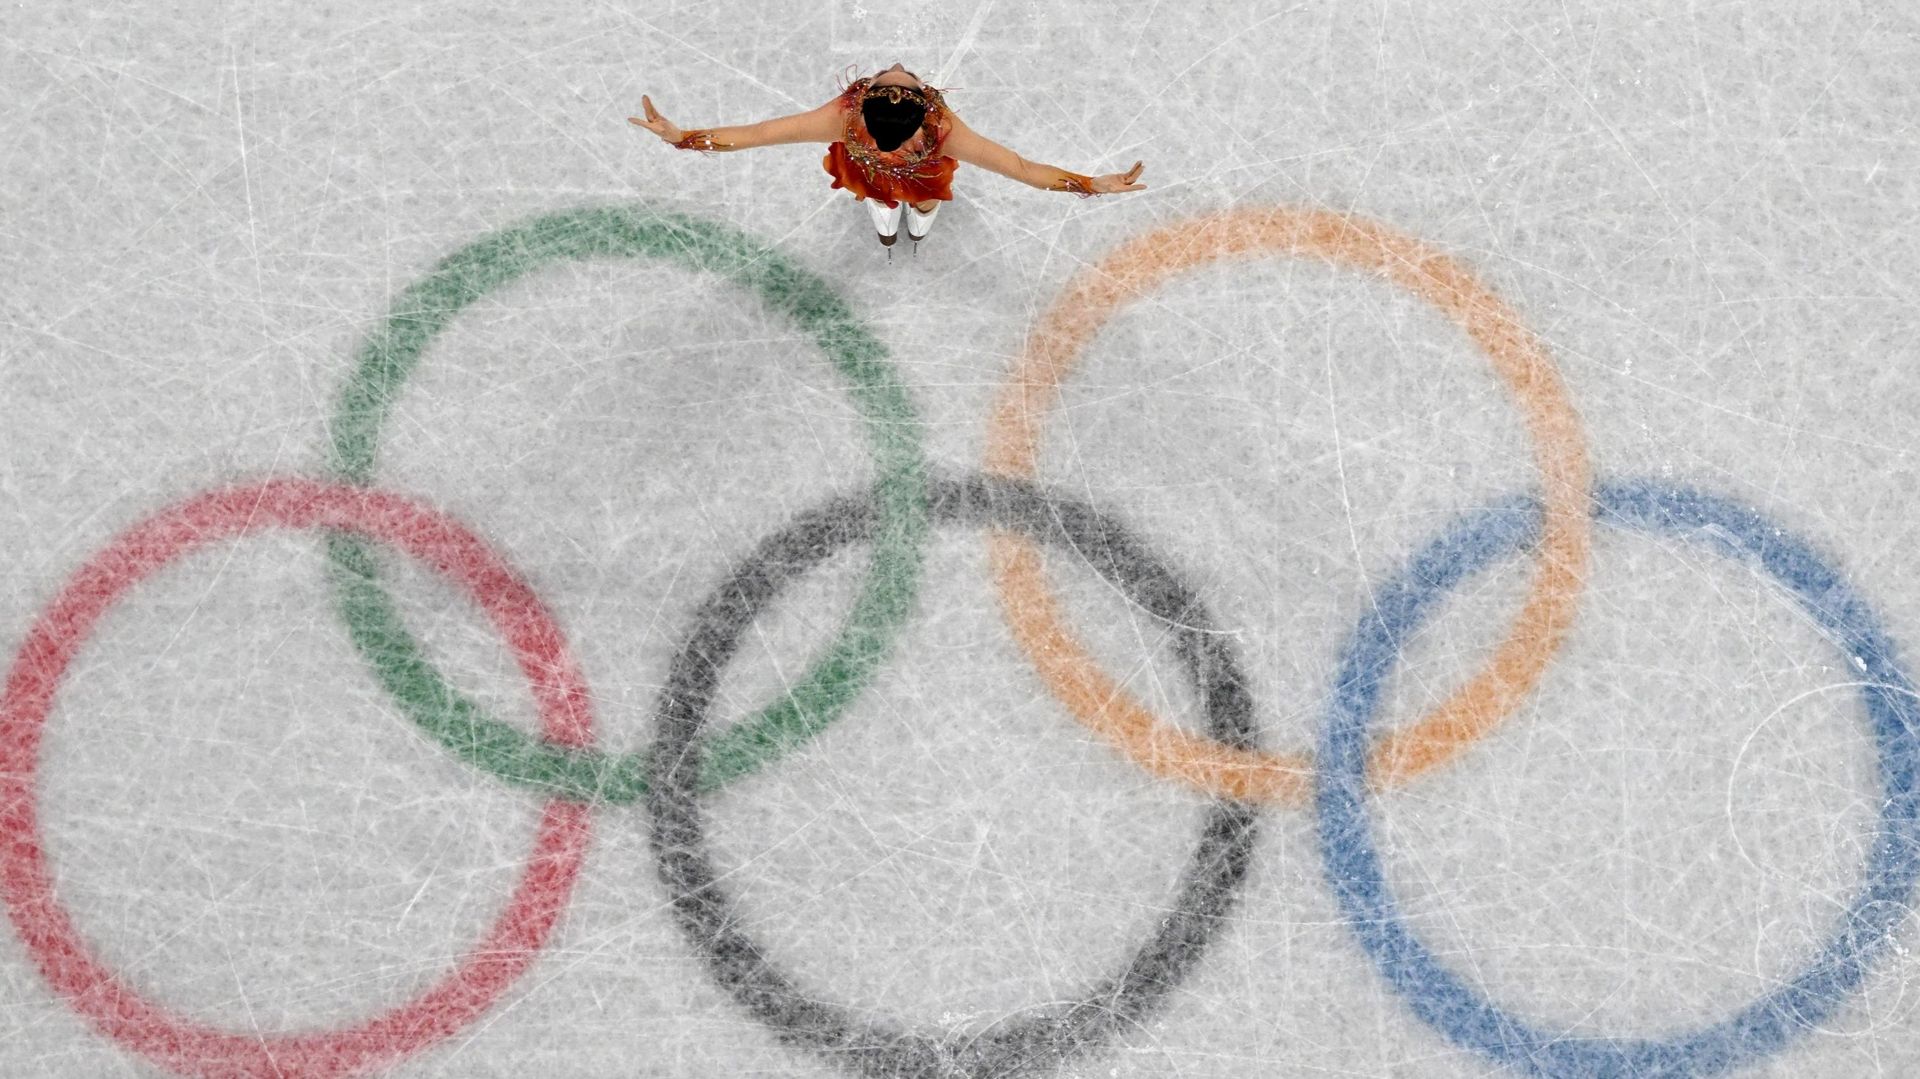 L'organisation non gouvernementale Human Rights Watch a critiqué les Jeux Olympiques d'hiver de Pékin du point de vue des droits humains. "Ces Jeux sont un rêve pour la Chine du président Xi Jinping, mais un cauchemar pour les droits humains", a déclaré M